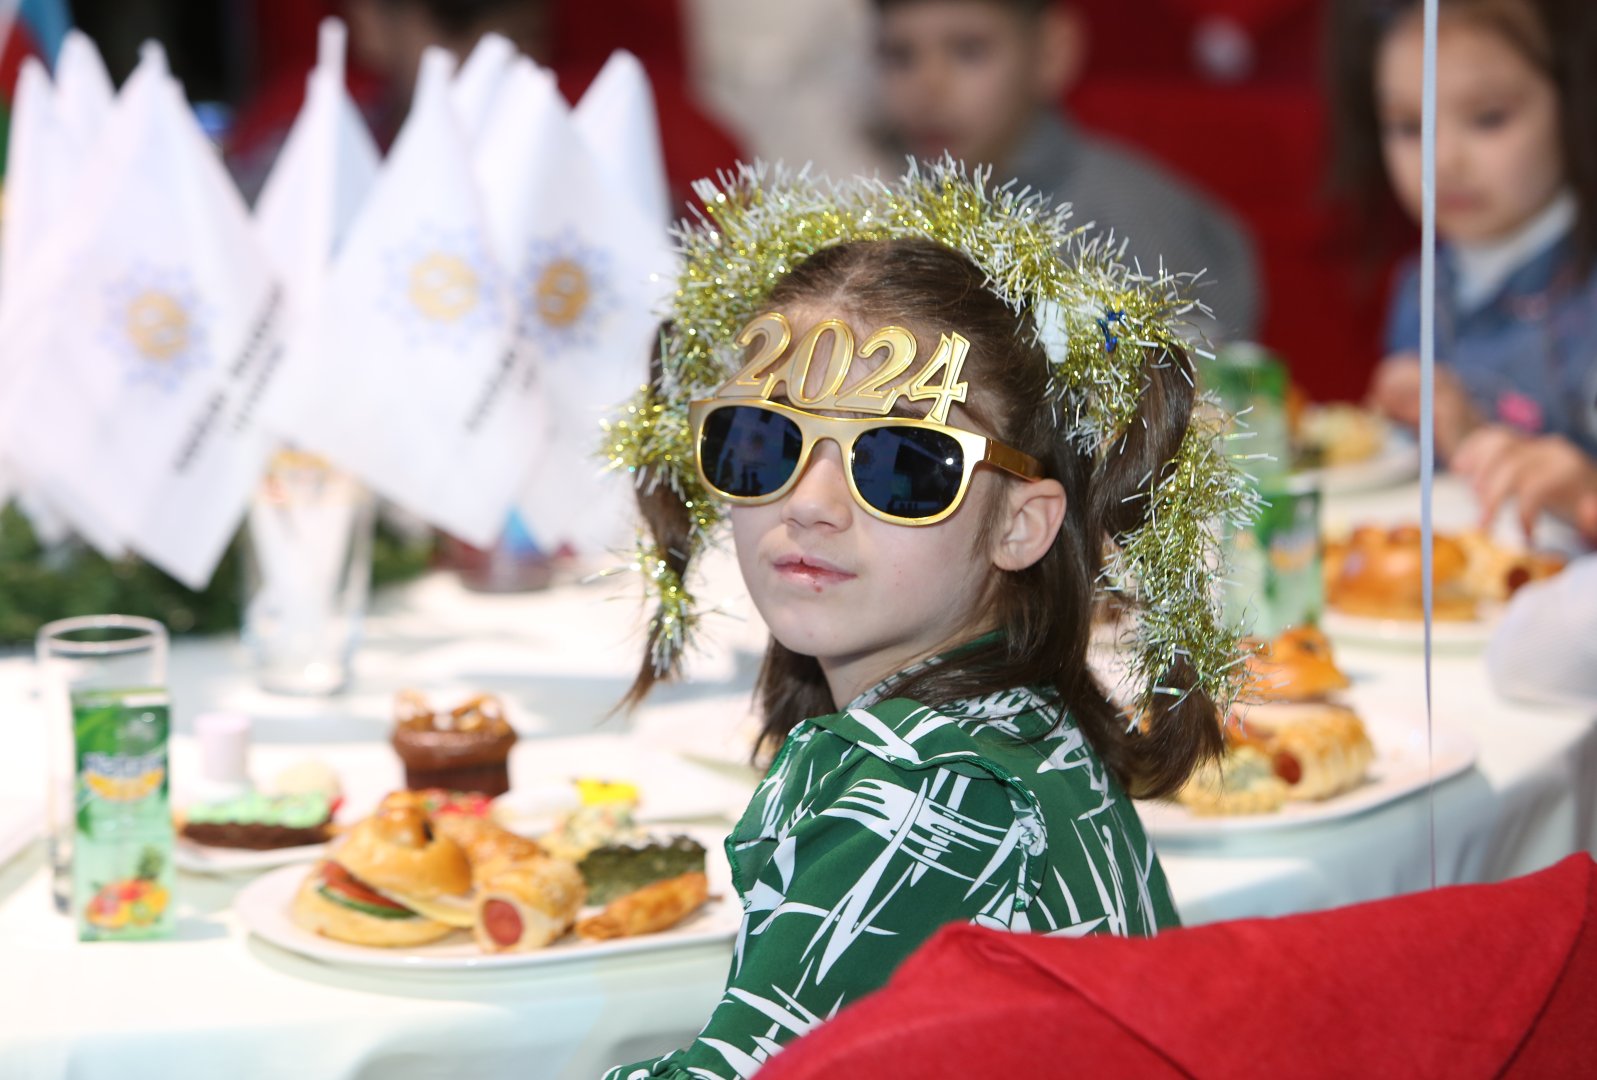 Heydar Aliyev Foundation organizes festive celebration for children (PHOTO)